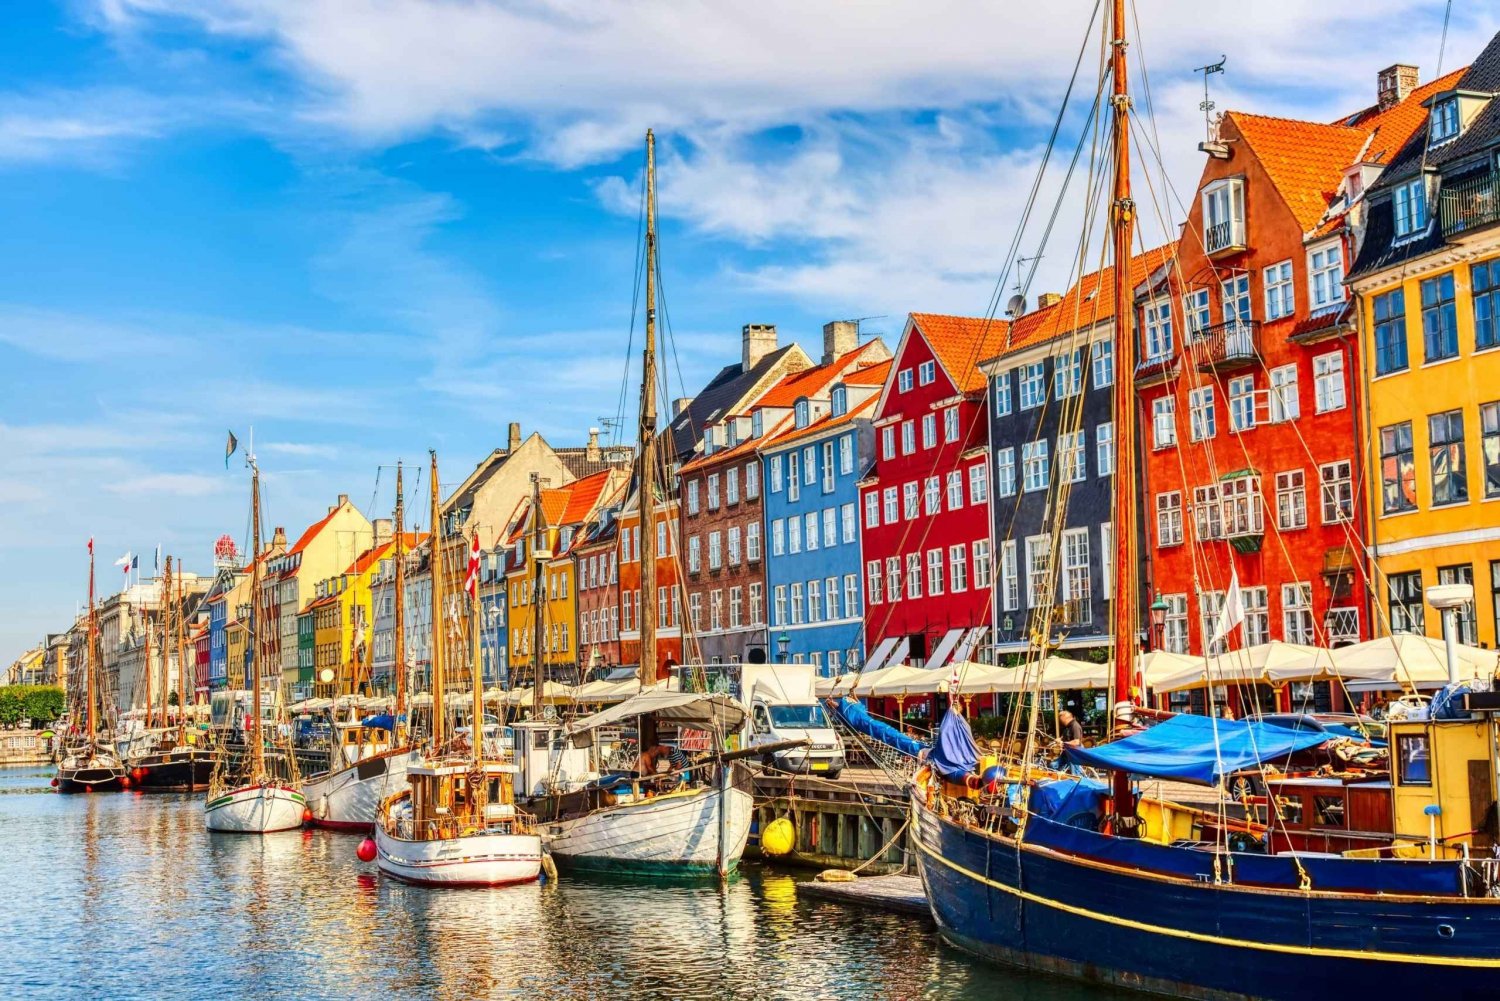 Snaps, baarit ja yöelämä Kööpenhaminan Nyhavnin kierros